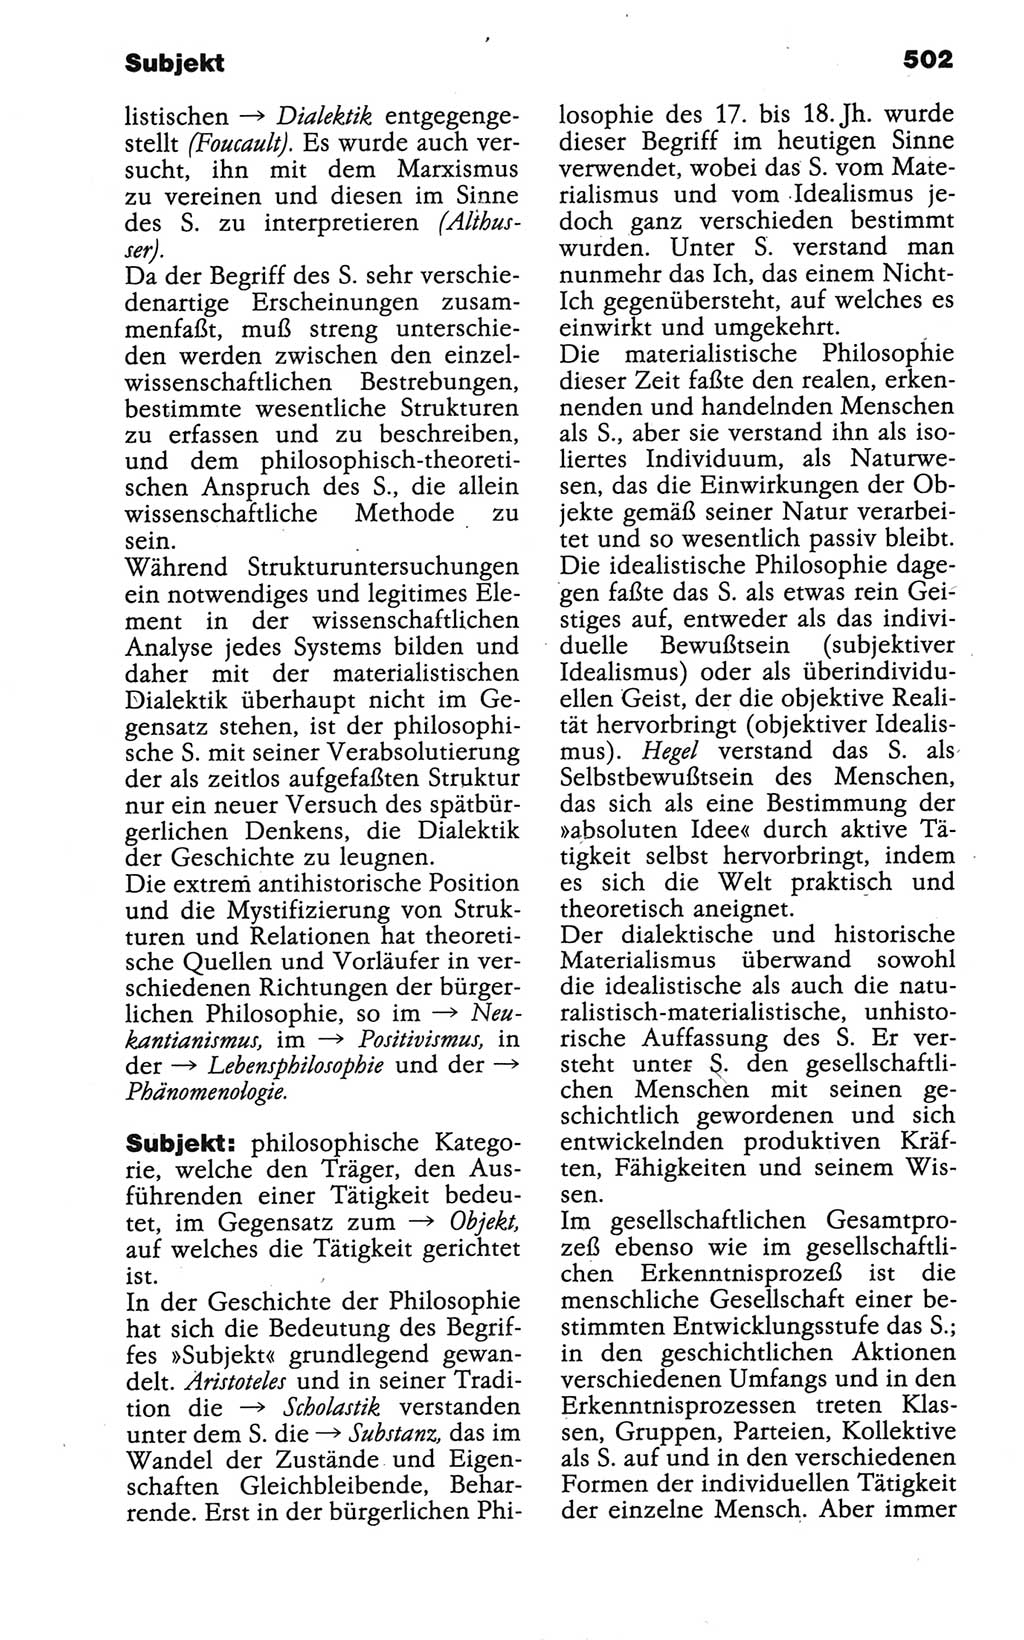 Wörterbuch der marxistisch-leninistischen Philosophie [Deutsche Demokratische Republik (DDR)] 1986, Seite 502 (Wb. ML Phil. DDR 1986, S. 502)